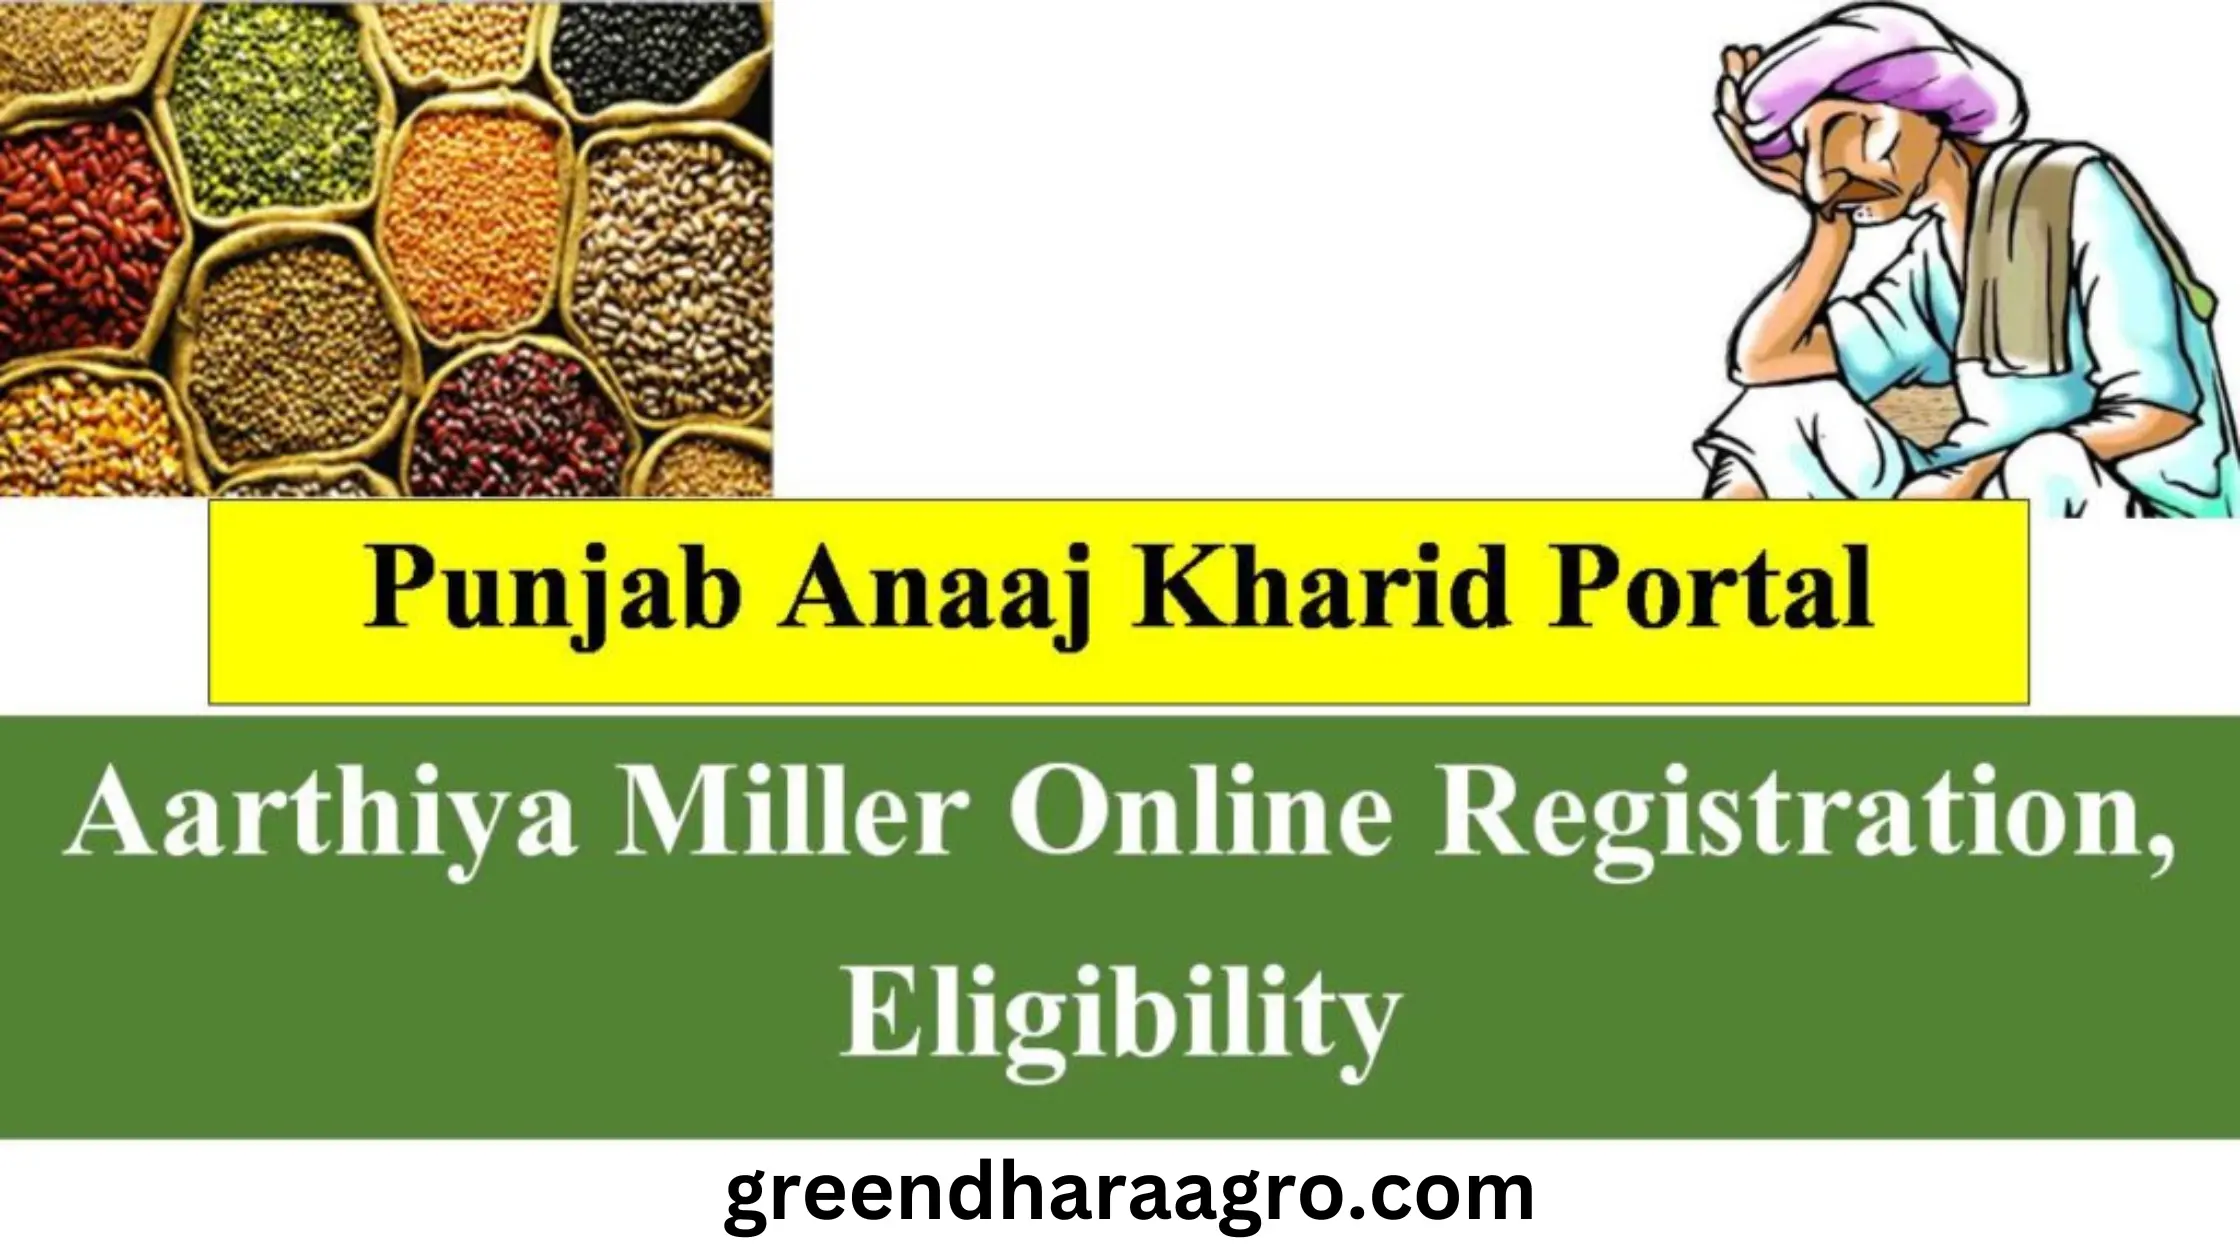 पंजाब अनाज खरीद पोर्टल ऑनलाइन रजिस्ट्रेशन, Punjab Anaaj Kharid Portal